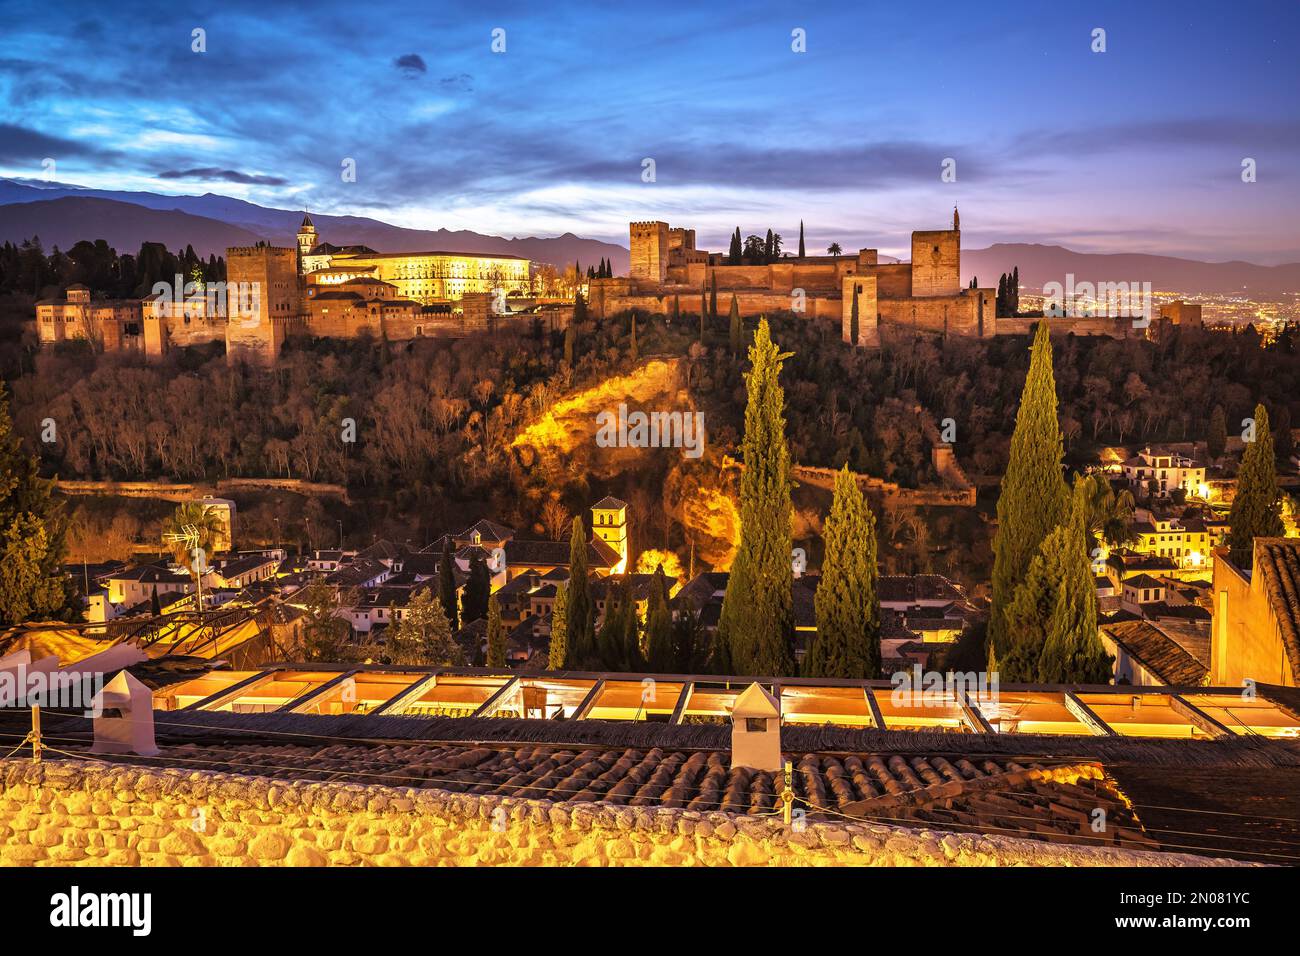 Antica vista sull'alba dell'Alhambra, sito patrimonio dell'umanità dell'UNESCO a Granada, nella regione dell'Andalusia in Spagna Foto Stock